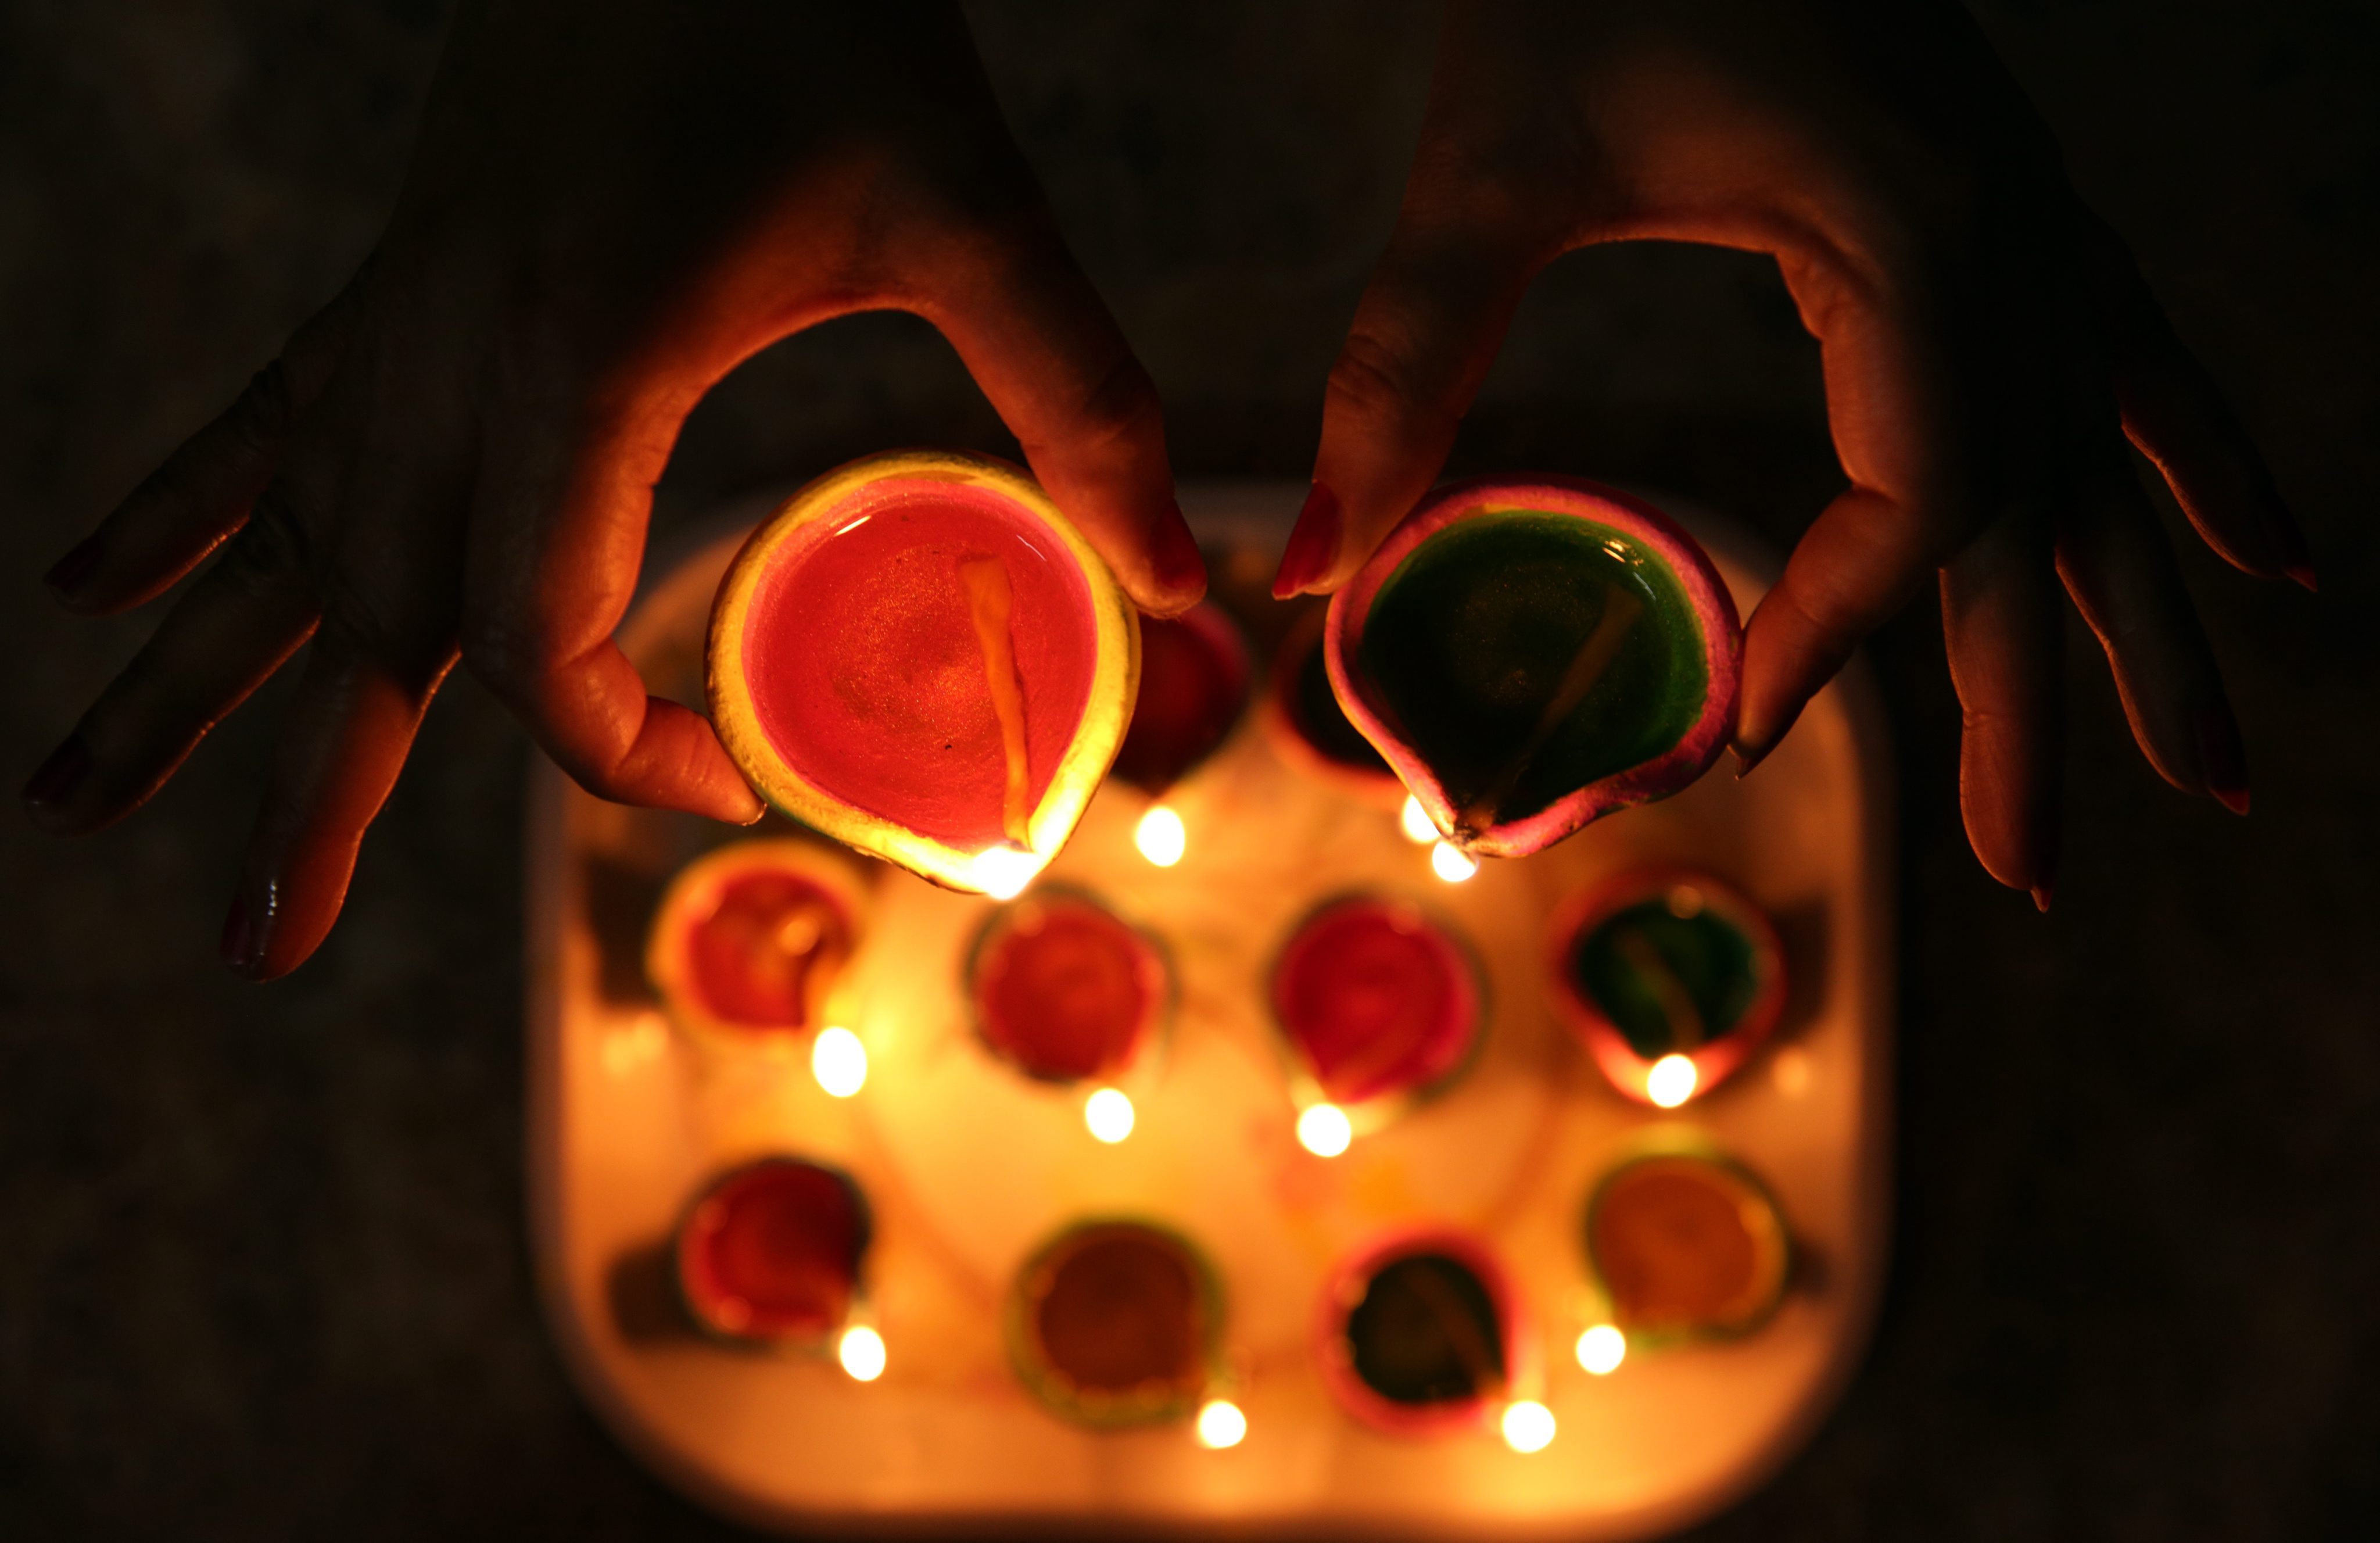 Дивали е най-големият индийски и индуистки празник, равносилен на християнската Коледа. Дивали е известен като „фестивал на светлината“ и е един от най-важните религиозни празници за хиндусите – те винаги го чакат с нетърпение и го празнуват цели 5 дни в края на октомври и средата на ноември в зависимост от религиозния им календар.